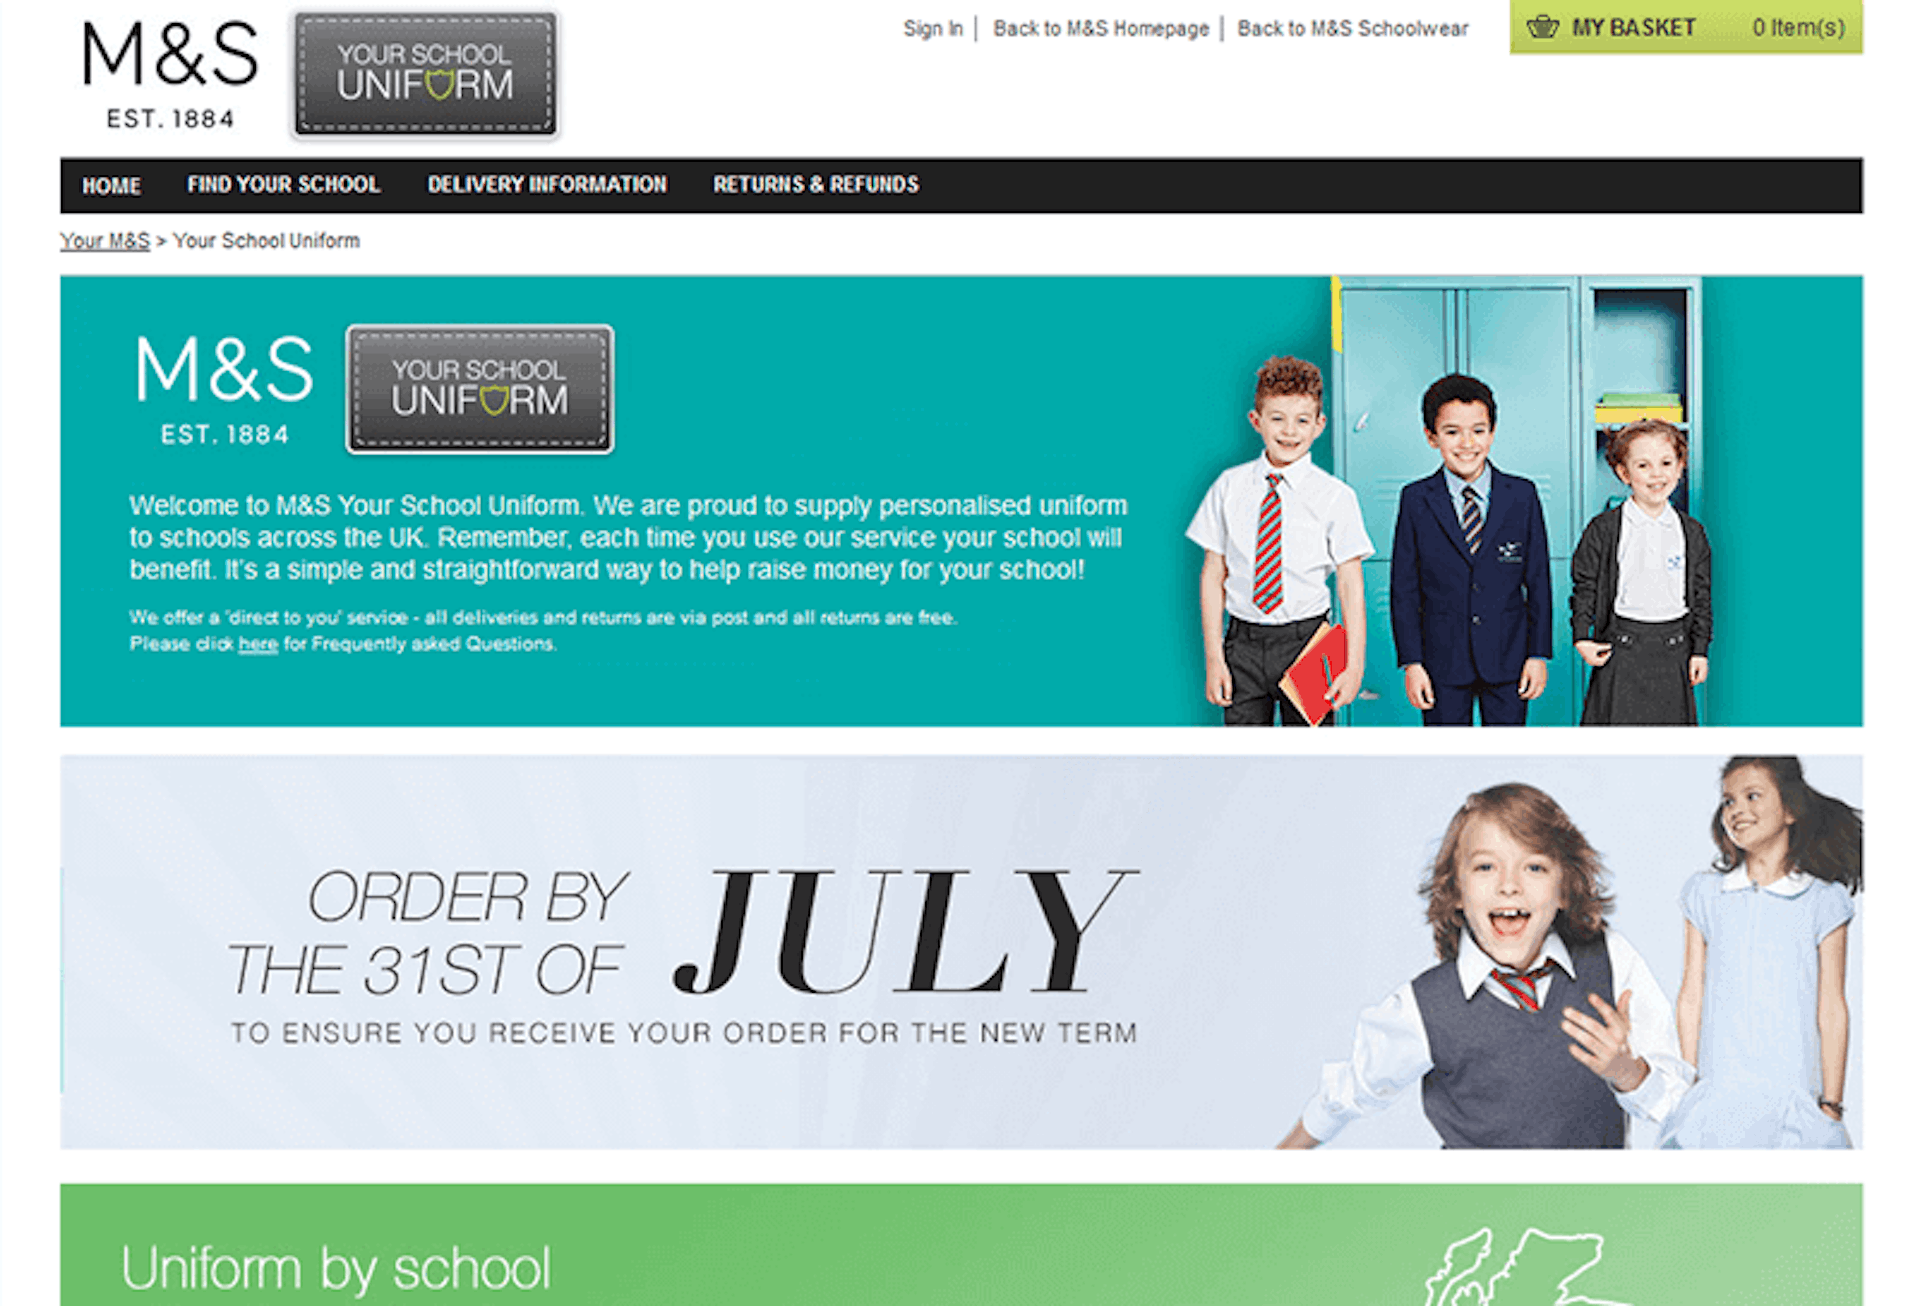 M&S Your School Uniform website